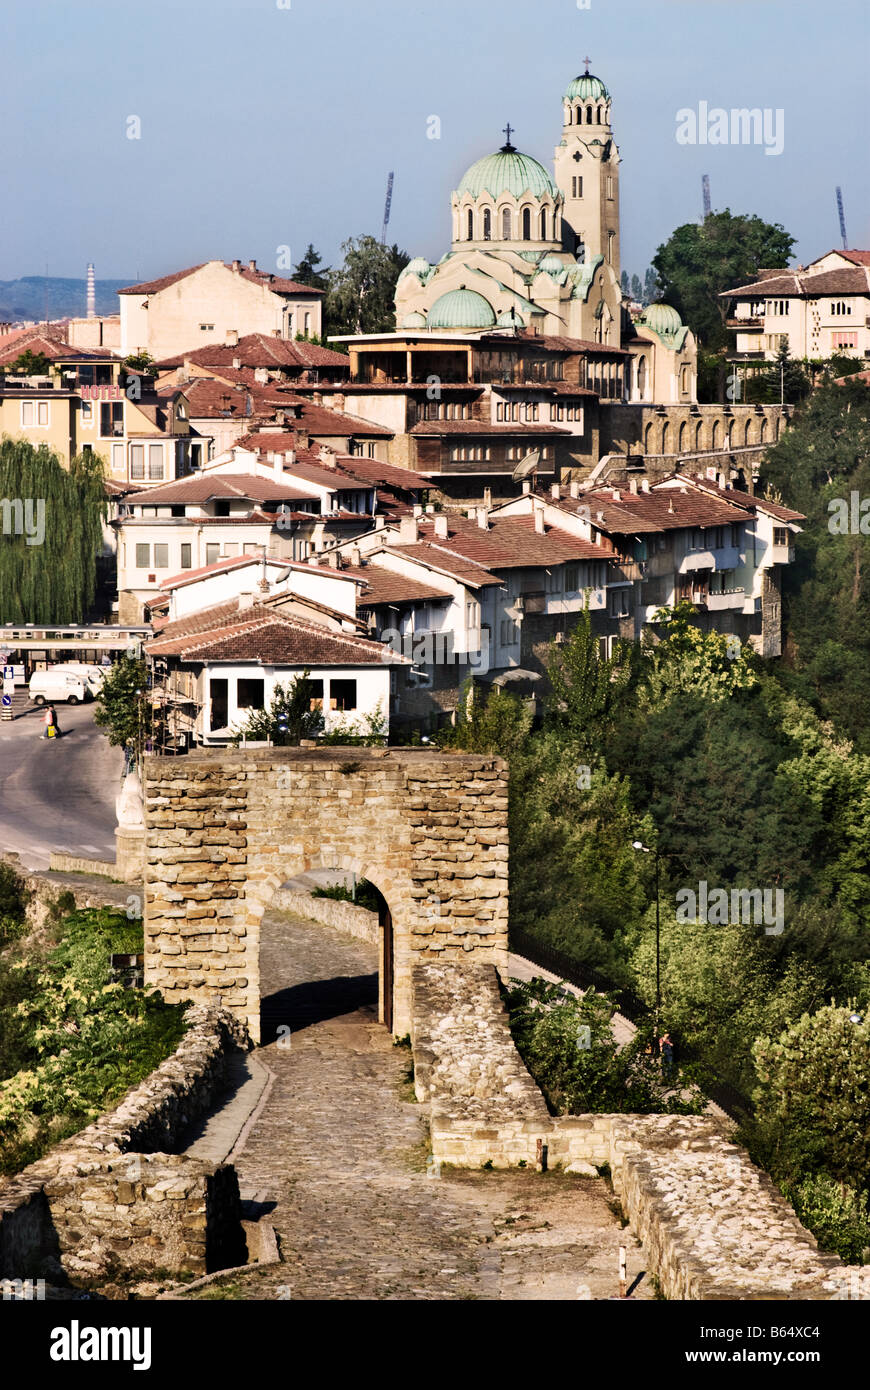 Avis de Veliko Tarnovo, à partir de l'entrée principale à la Forteresse de tsarevets. Veliko Tarnovo, Bulgarie Banque D'Images